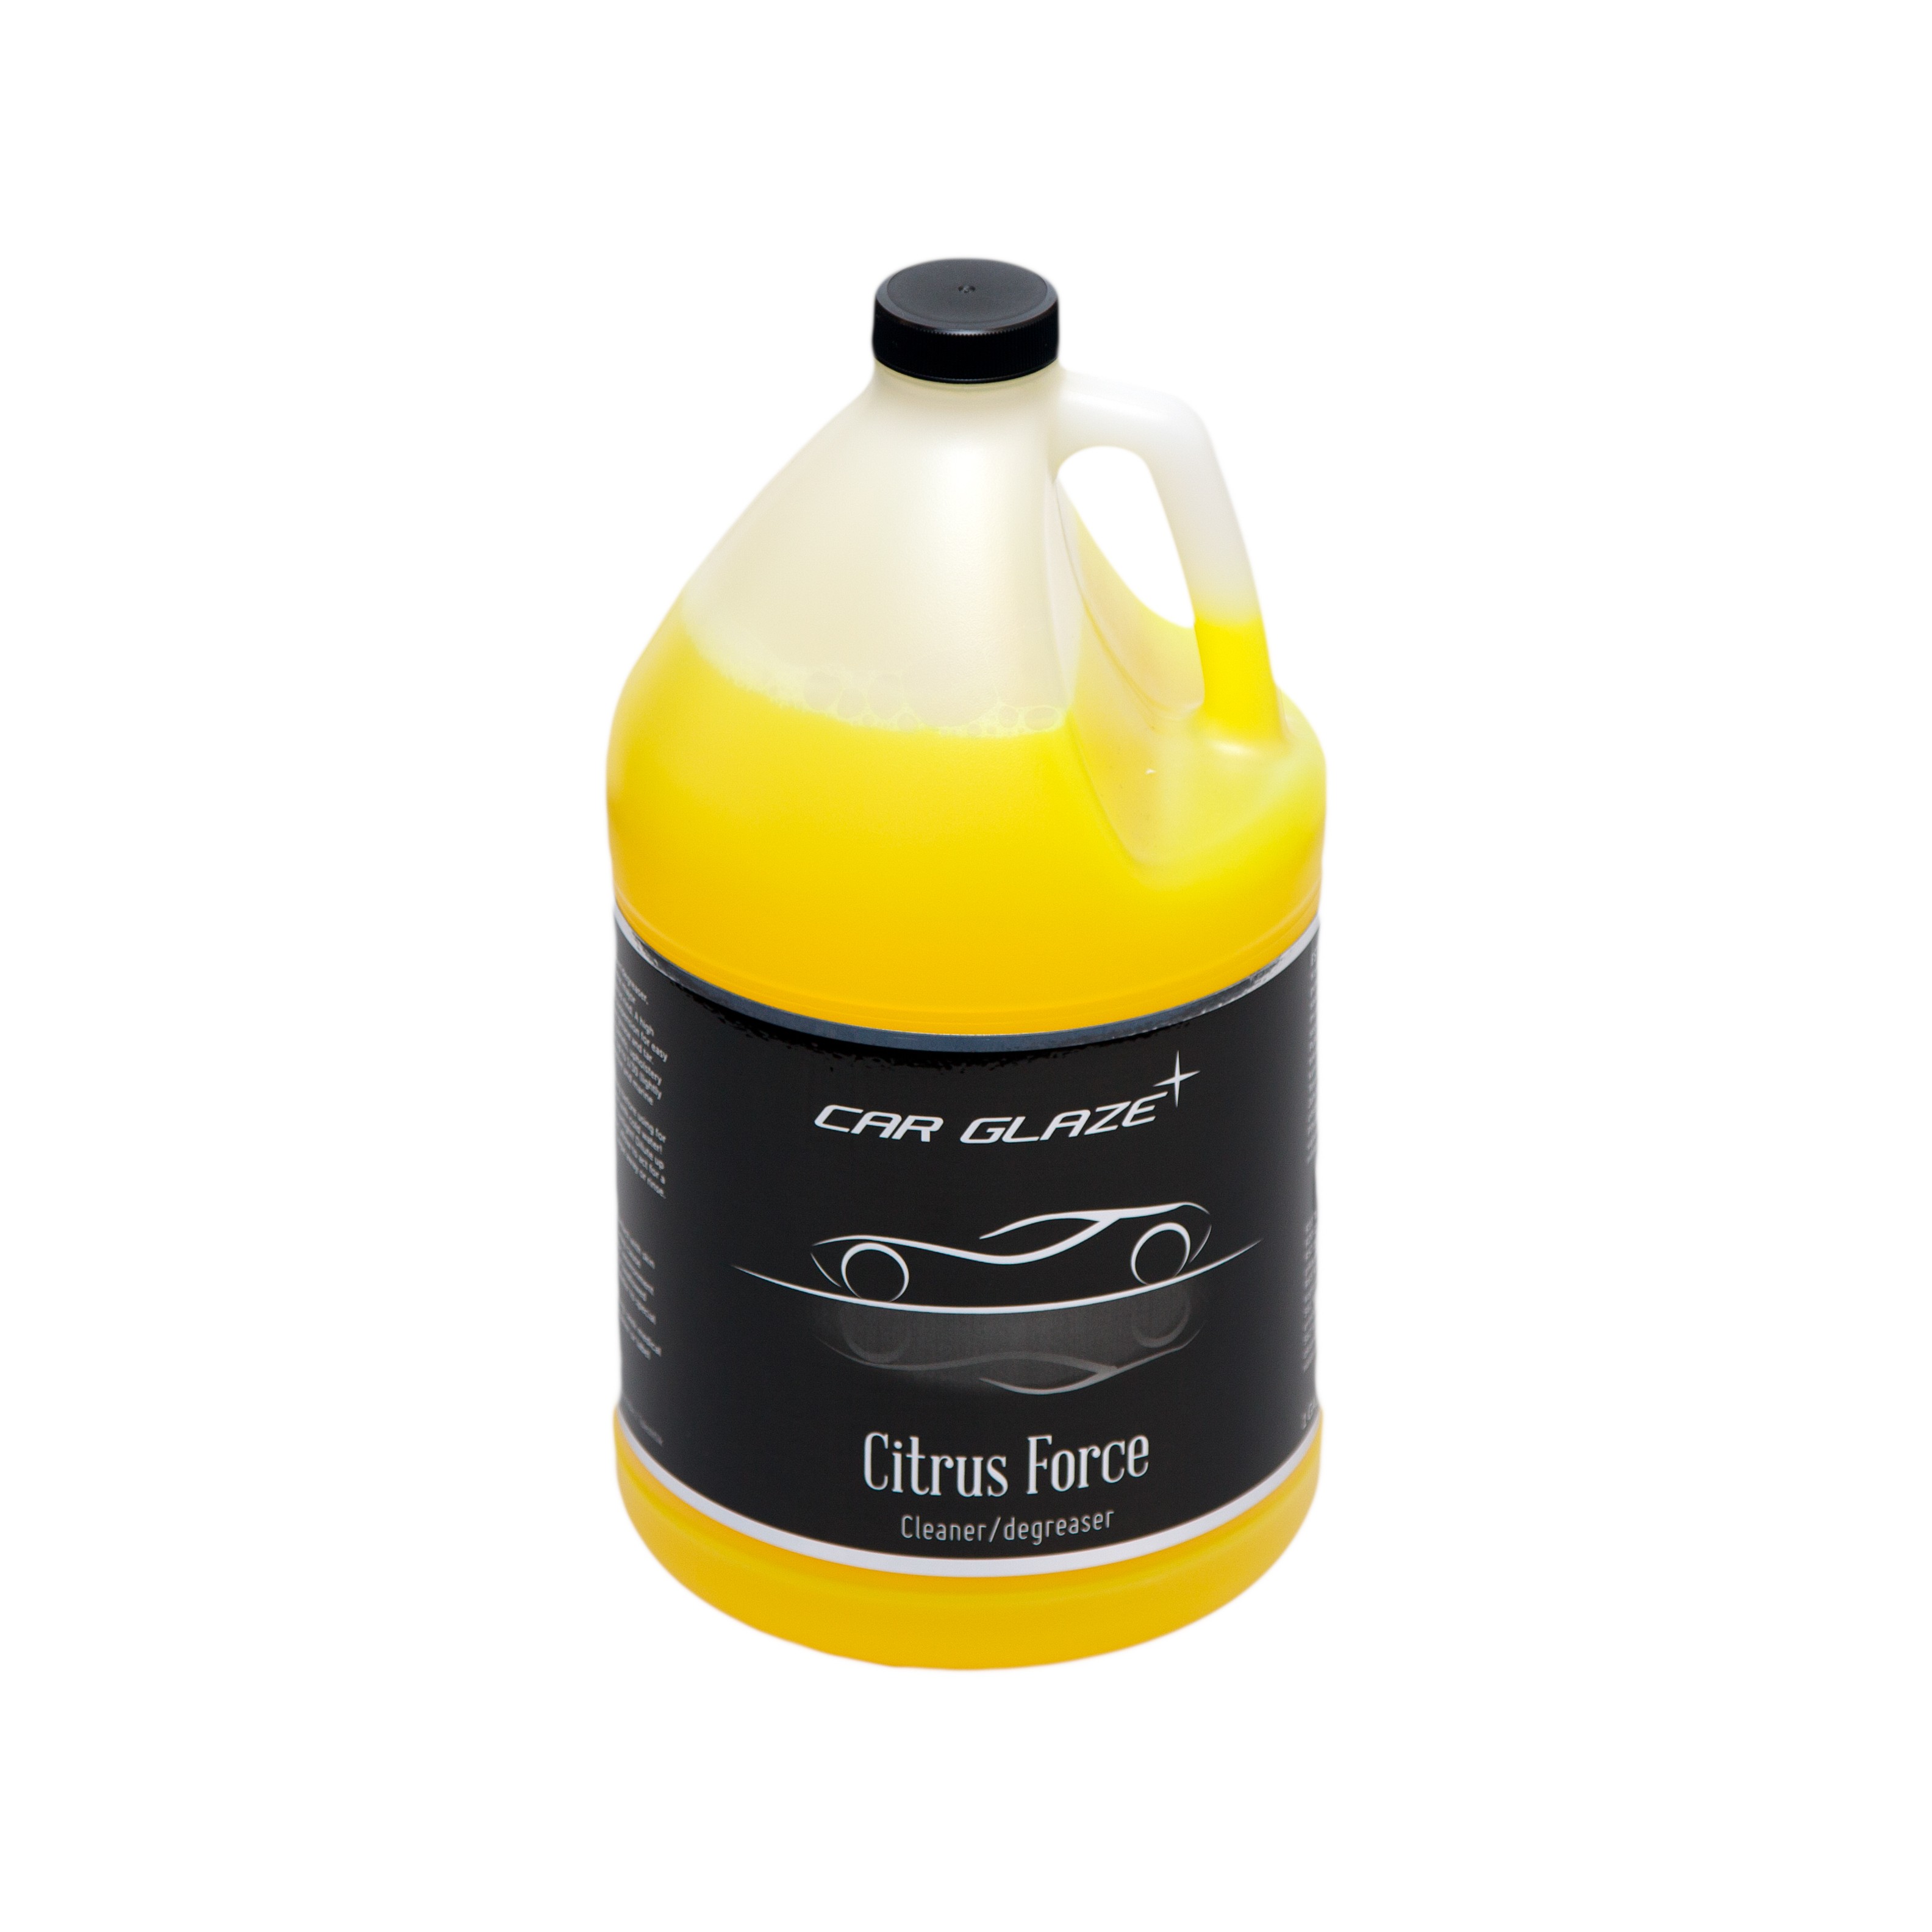 CITRUS FORCE - Car Glaze - очиститель  с цитрусовым ароматом на основе лимонена